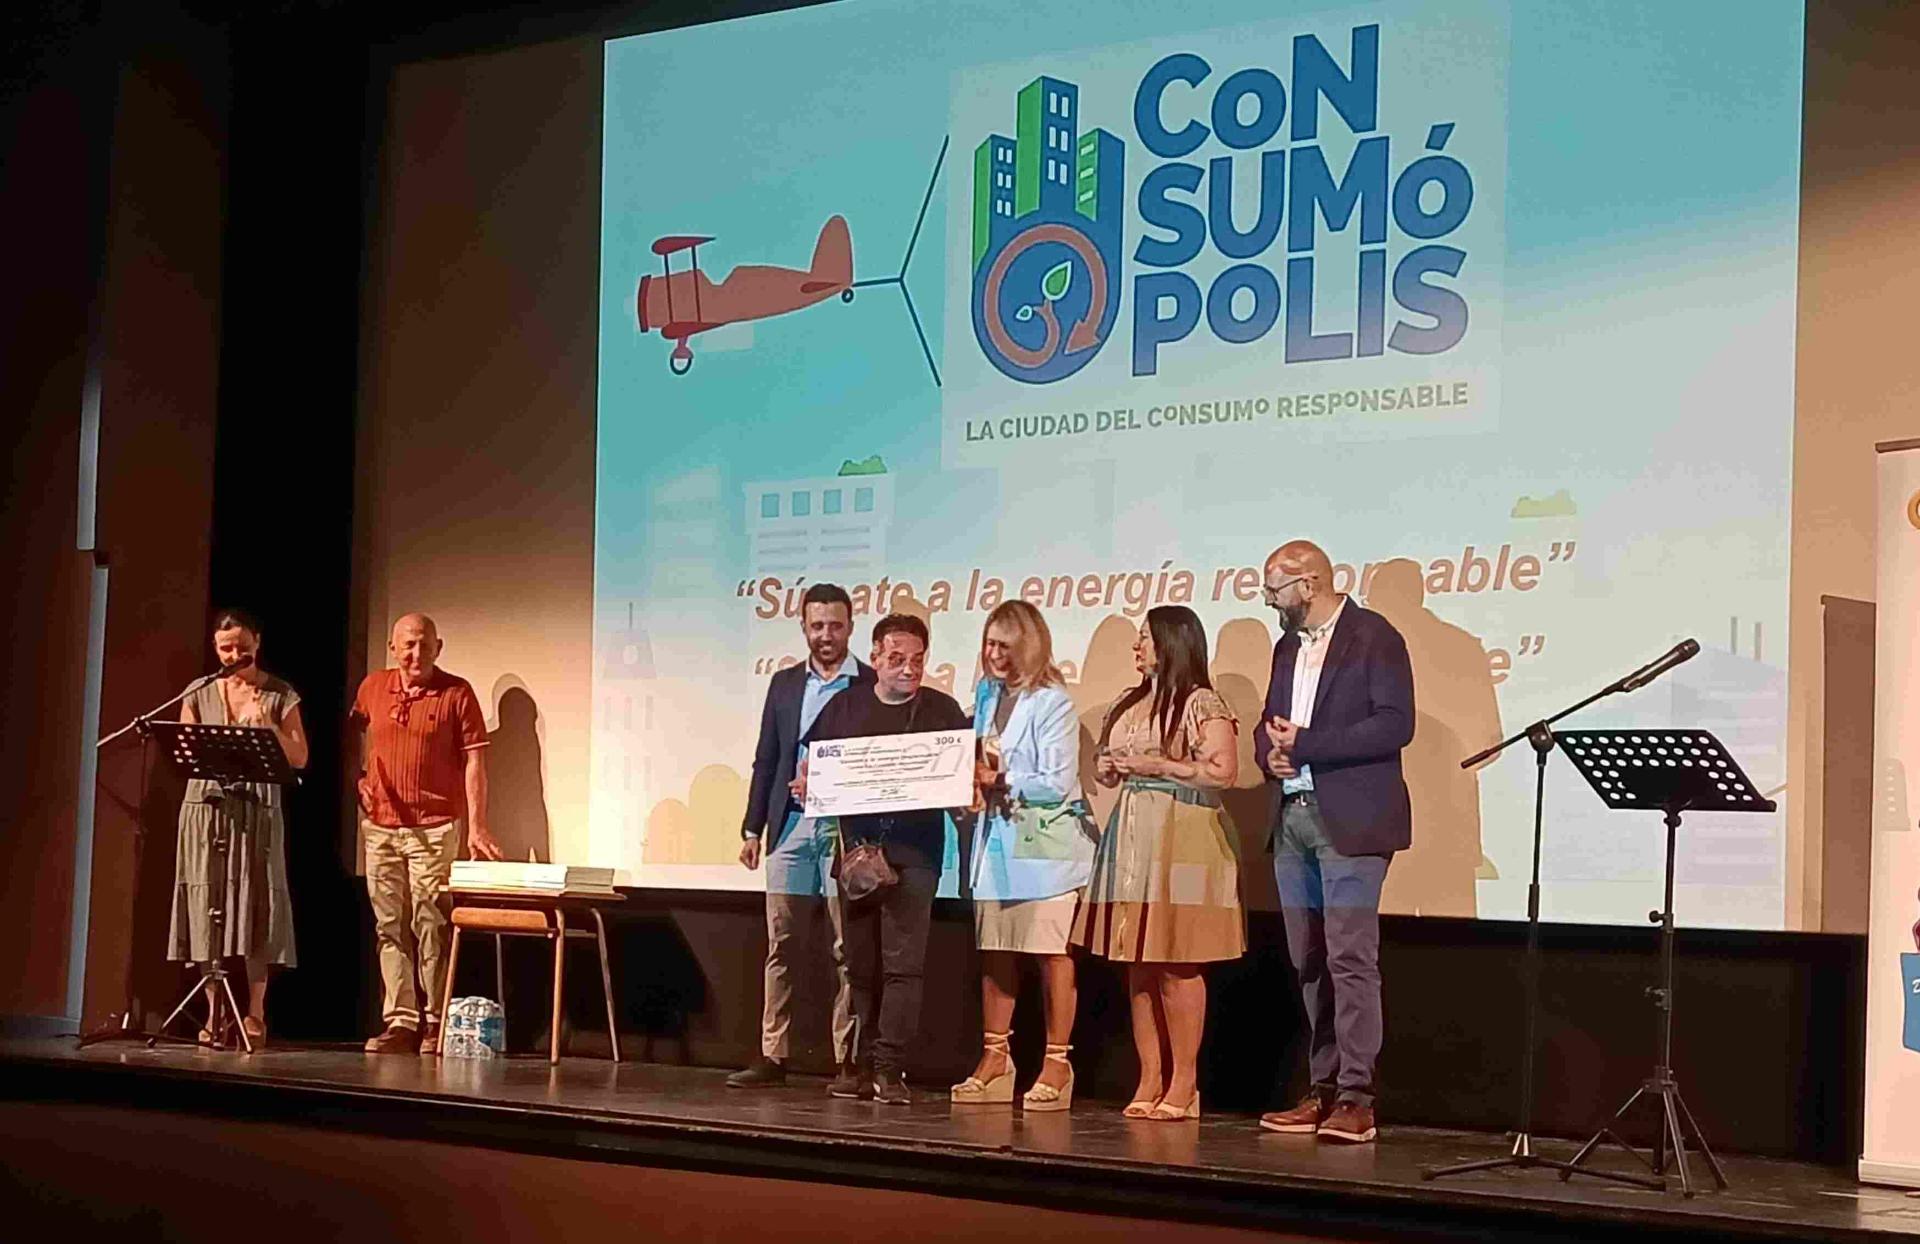 El Figueras Pacheco triomfa en els premis Cosumópolis 19